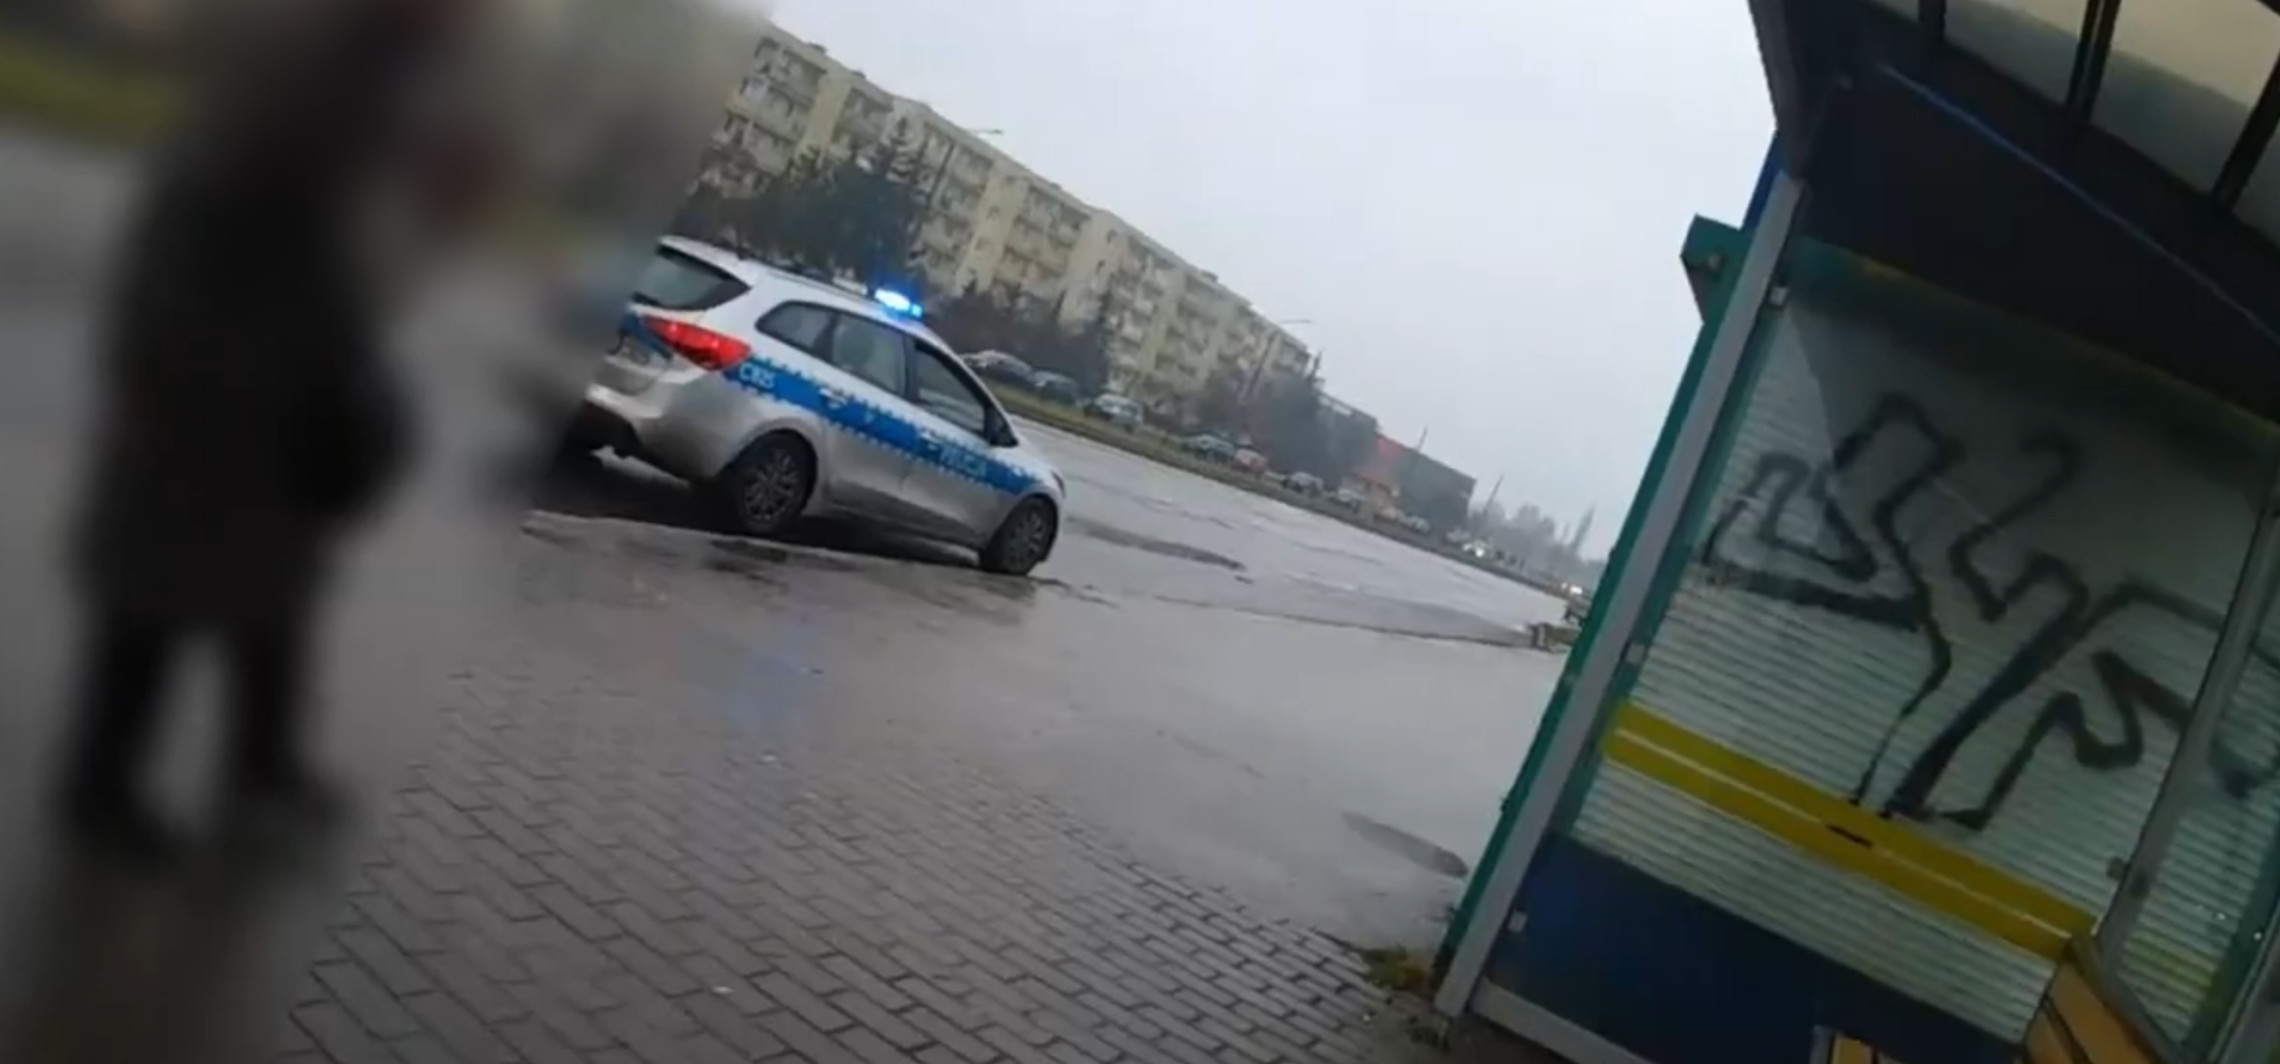 Inowrocław - Policjantka dostrzegła dziwne zachowanie mężczyzny na przystanku. Potrzebował pomocy